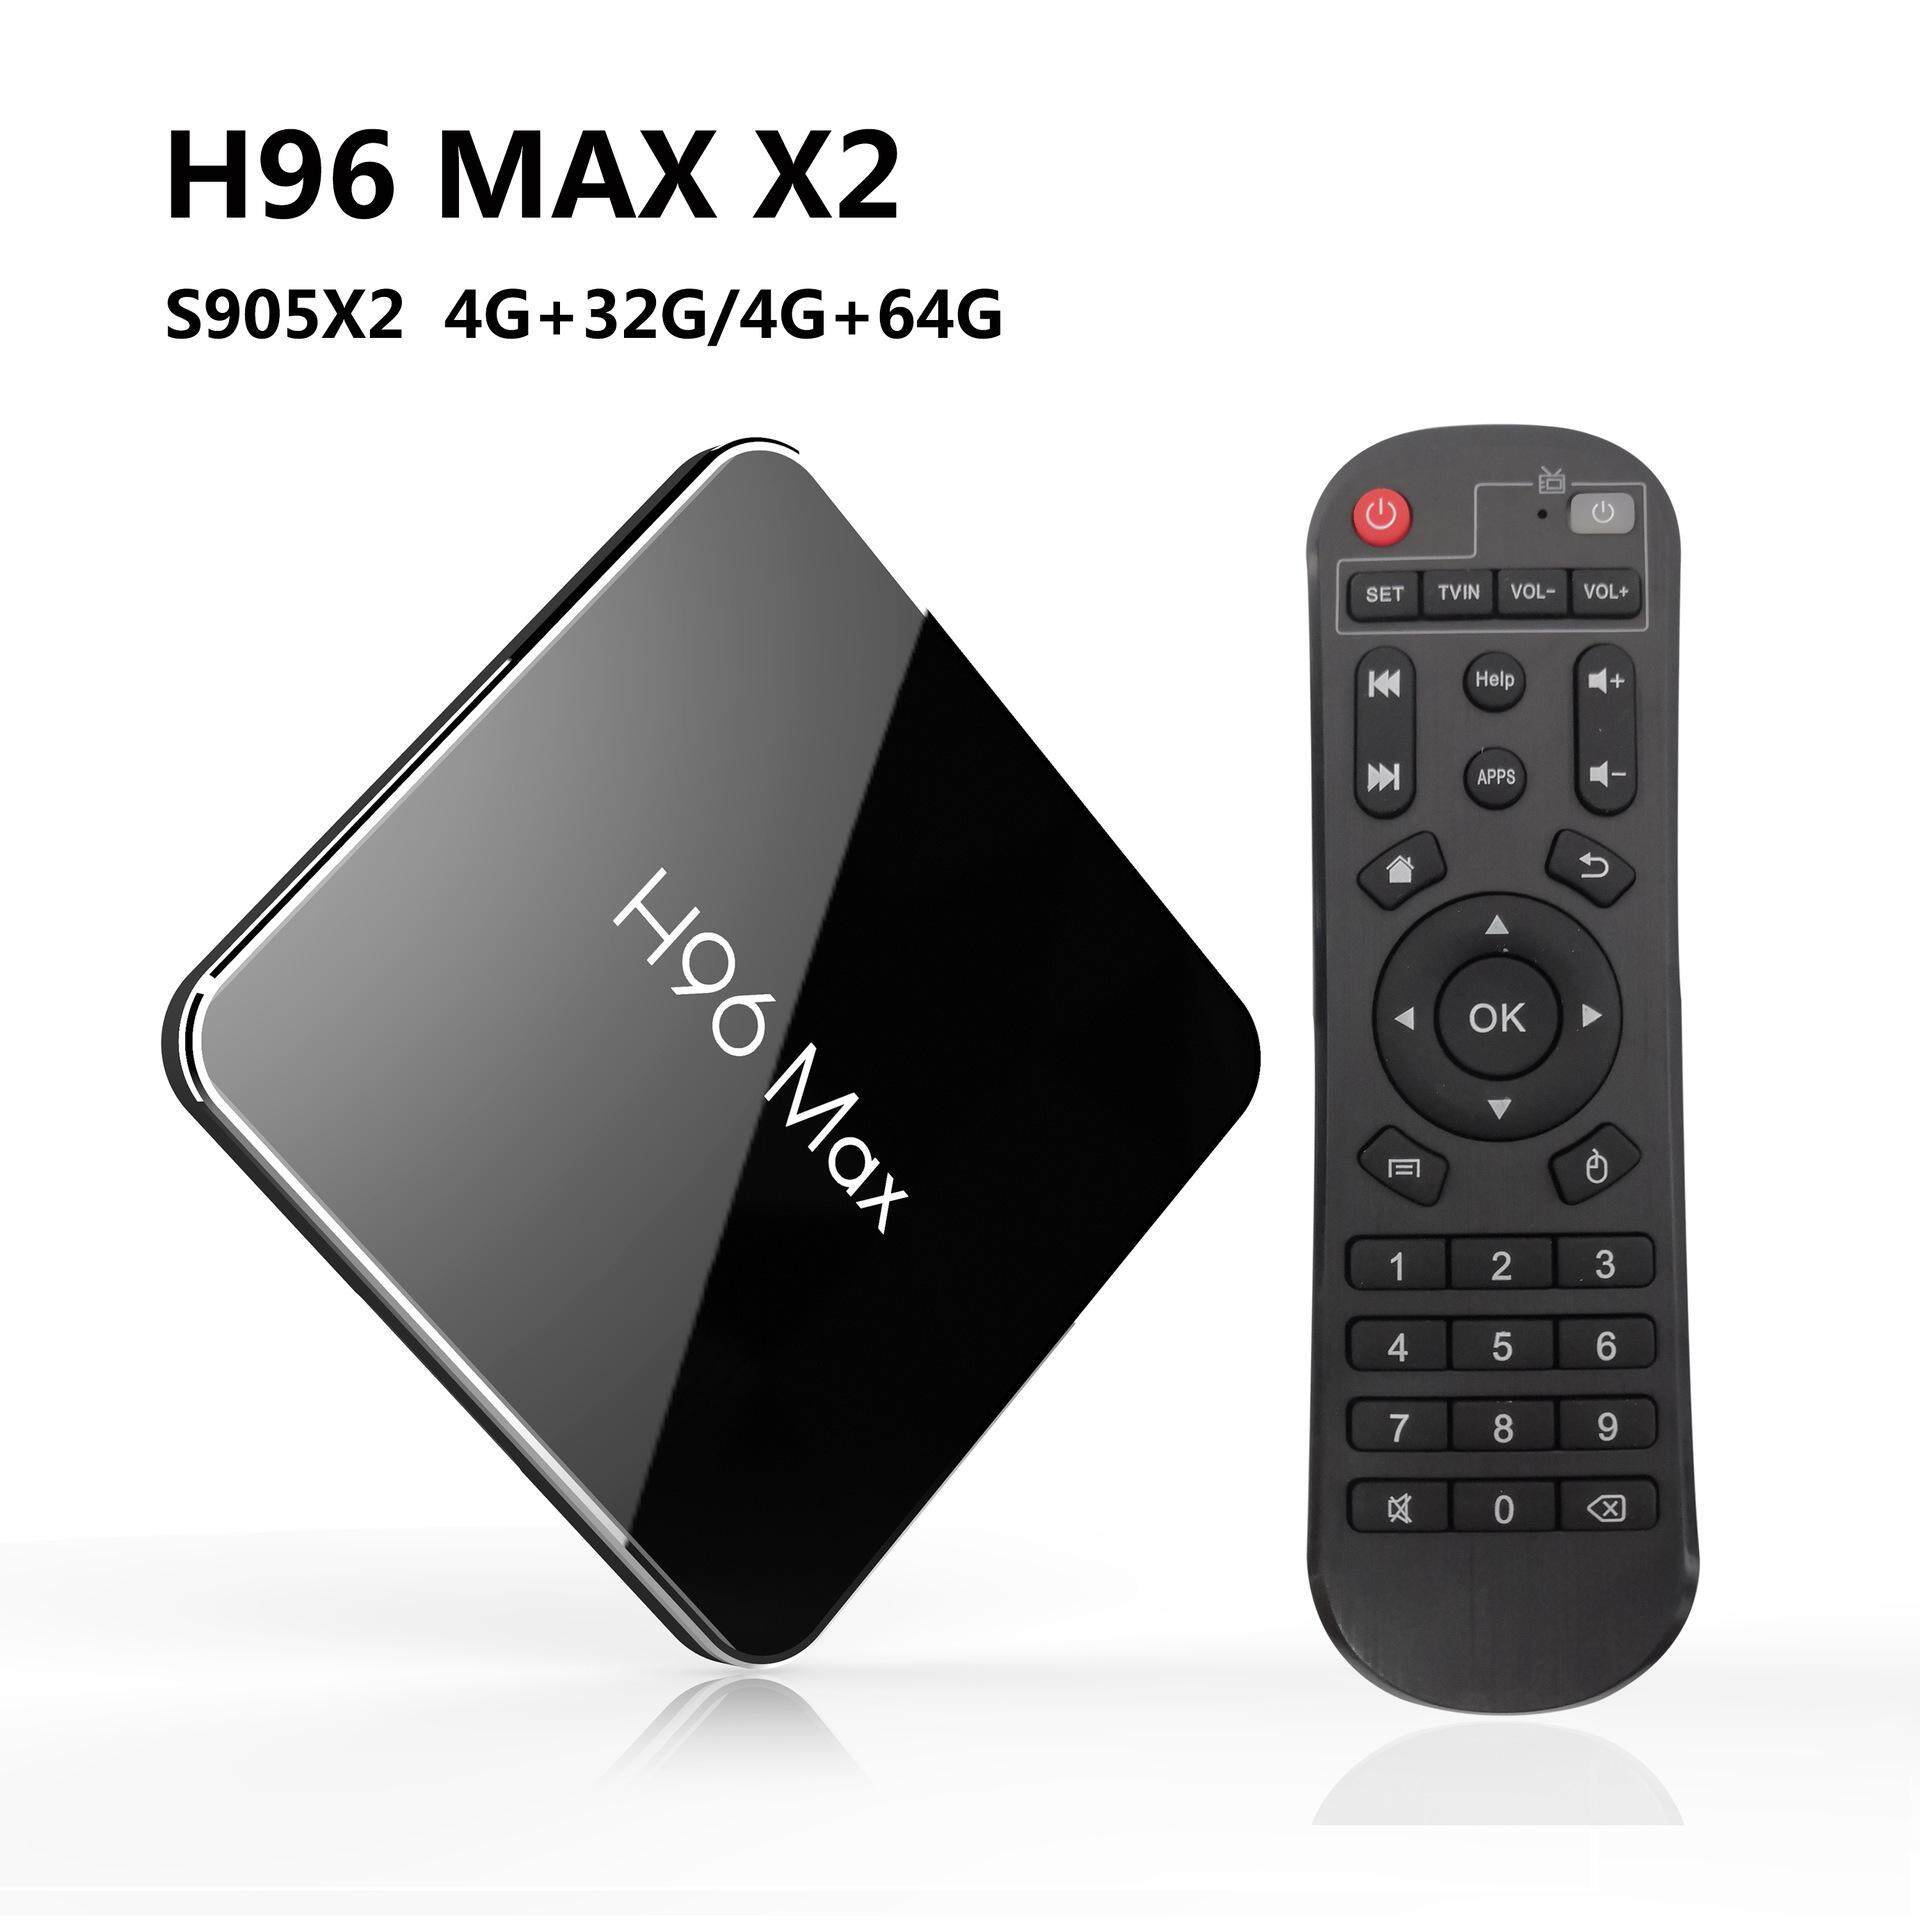 ยี่ห้อนี้ดีไหม  พะเยา Android Smart TV Box กล่องแอนดรอยด์รุ่นใหม่ปี 2019 H96 MAX X2 แรม4GB/64GB S905X2 android 8.1+แอพดูฟรีทีวีออนไลน์ ละคร ย้อนหลัง ฟังเพลง ยูทูป กูเกิล เฟซบุ๊ค + (ฟรี เม้าส์ไวเลสไร้สาย+สาย HDMI+รีโมท+ถ่านพานาโซนิคอัลคาไลน์ 2 ก้อน+คู่มือติดตั้งไทย)